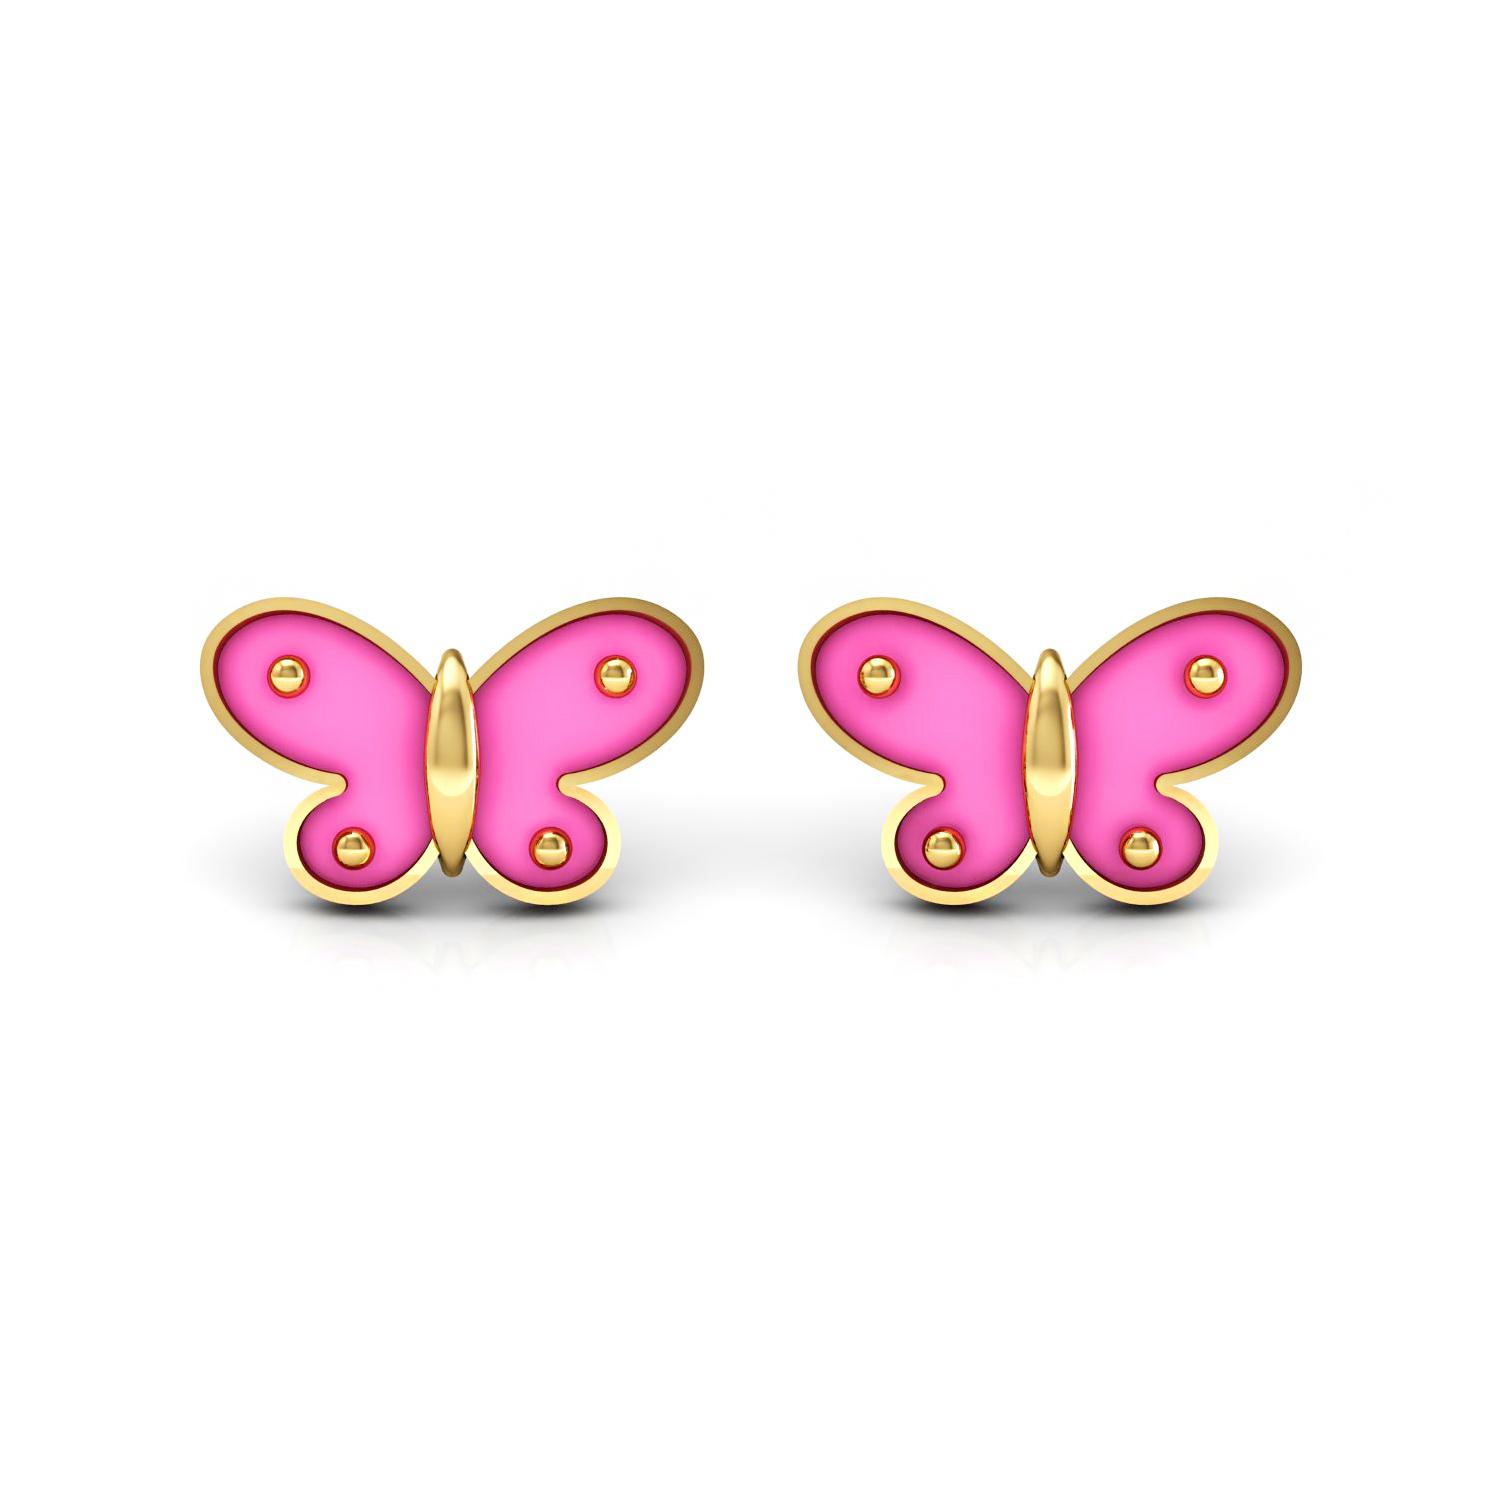 Butterfly Shape Enamel Kids Stud Earrings Set in Solid Gold